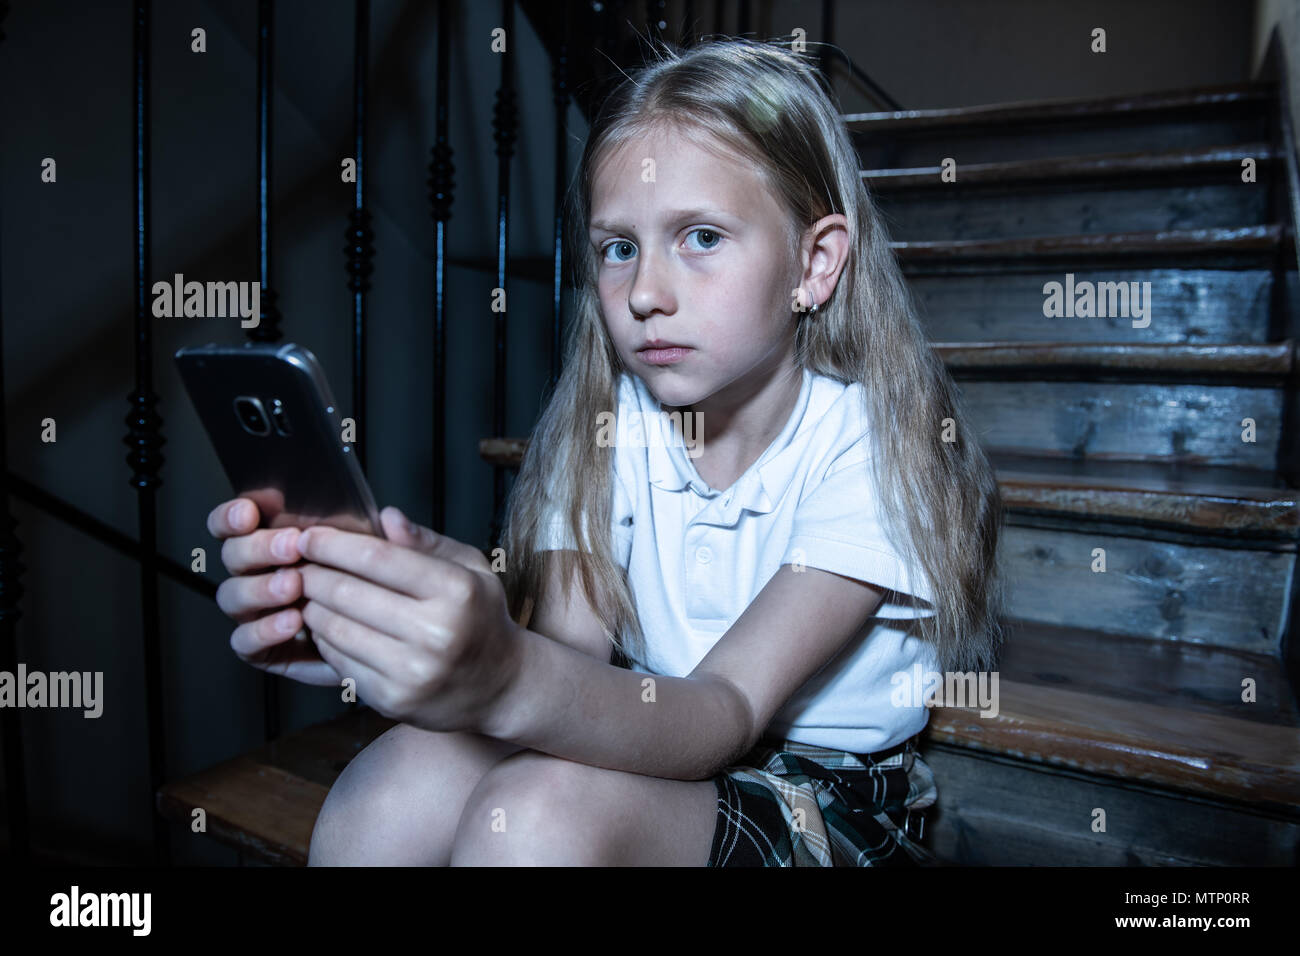 Déprimé triste jeune fille victime de cyberintimidation par smart mobile phone sitting on stairs vous sentir seul, malheureux, sans espoir et d'abus. Intimidé par texte Banque D'Images